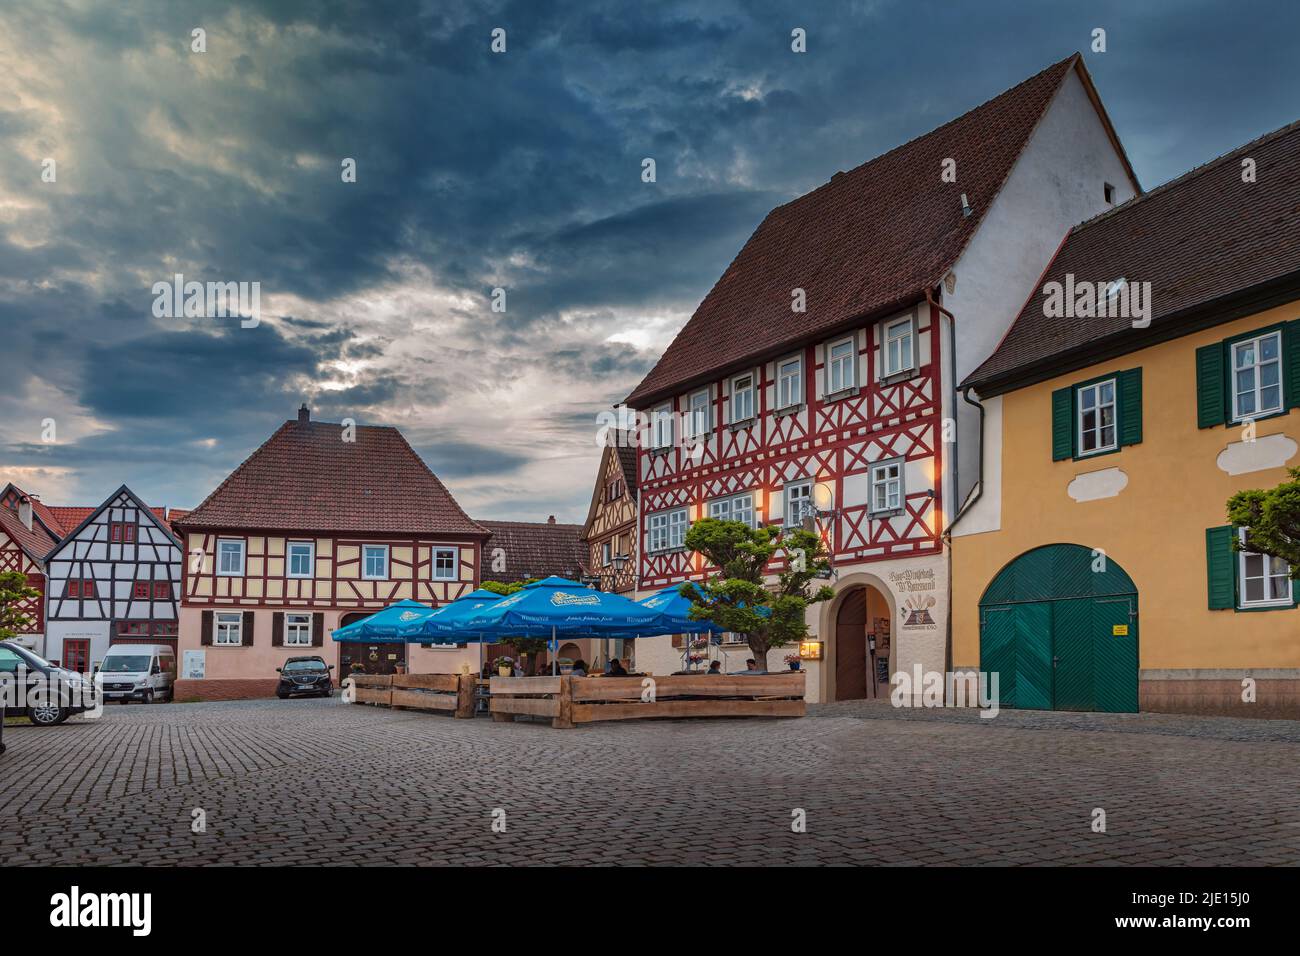 SESSLACH, BAVIERA, ALEMANIA - ALREDEDOR DE MAYO de 2022: Marktplatz y Gasthof Reinwand en la ciudad de Sesslach, Alemania. Foto de stock